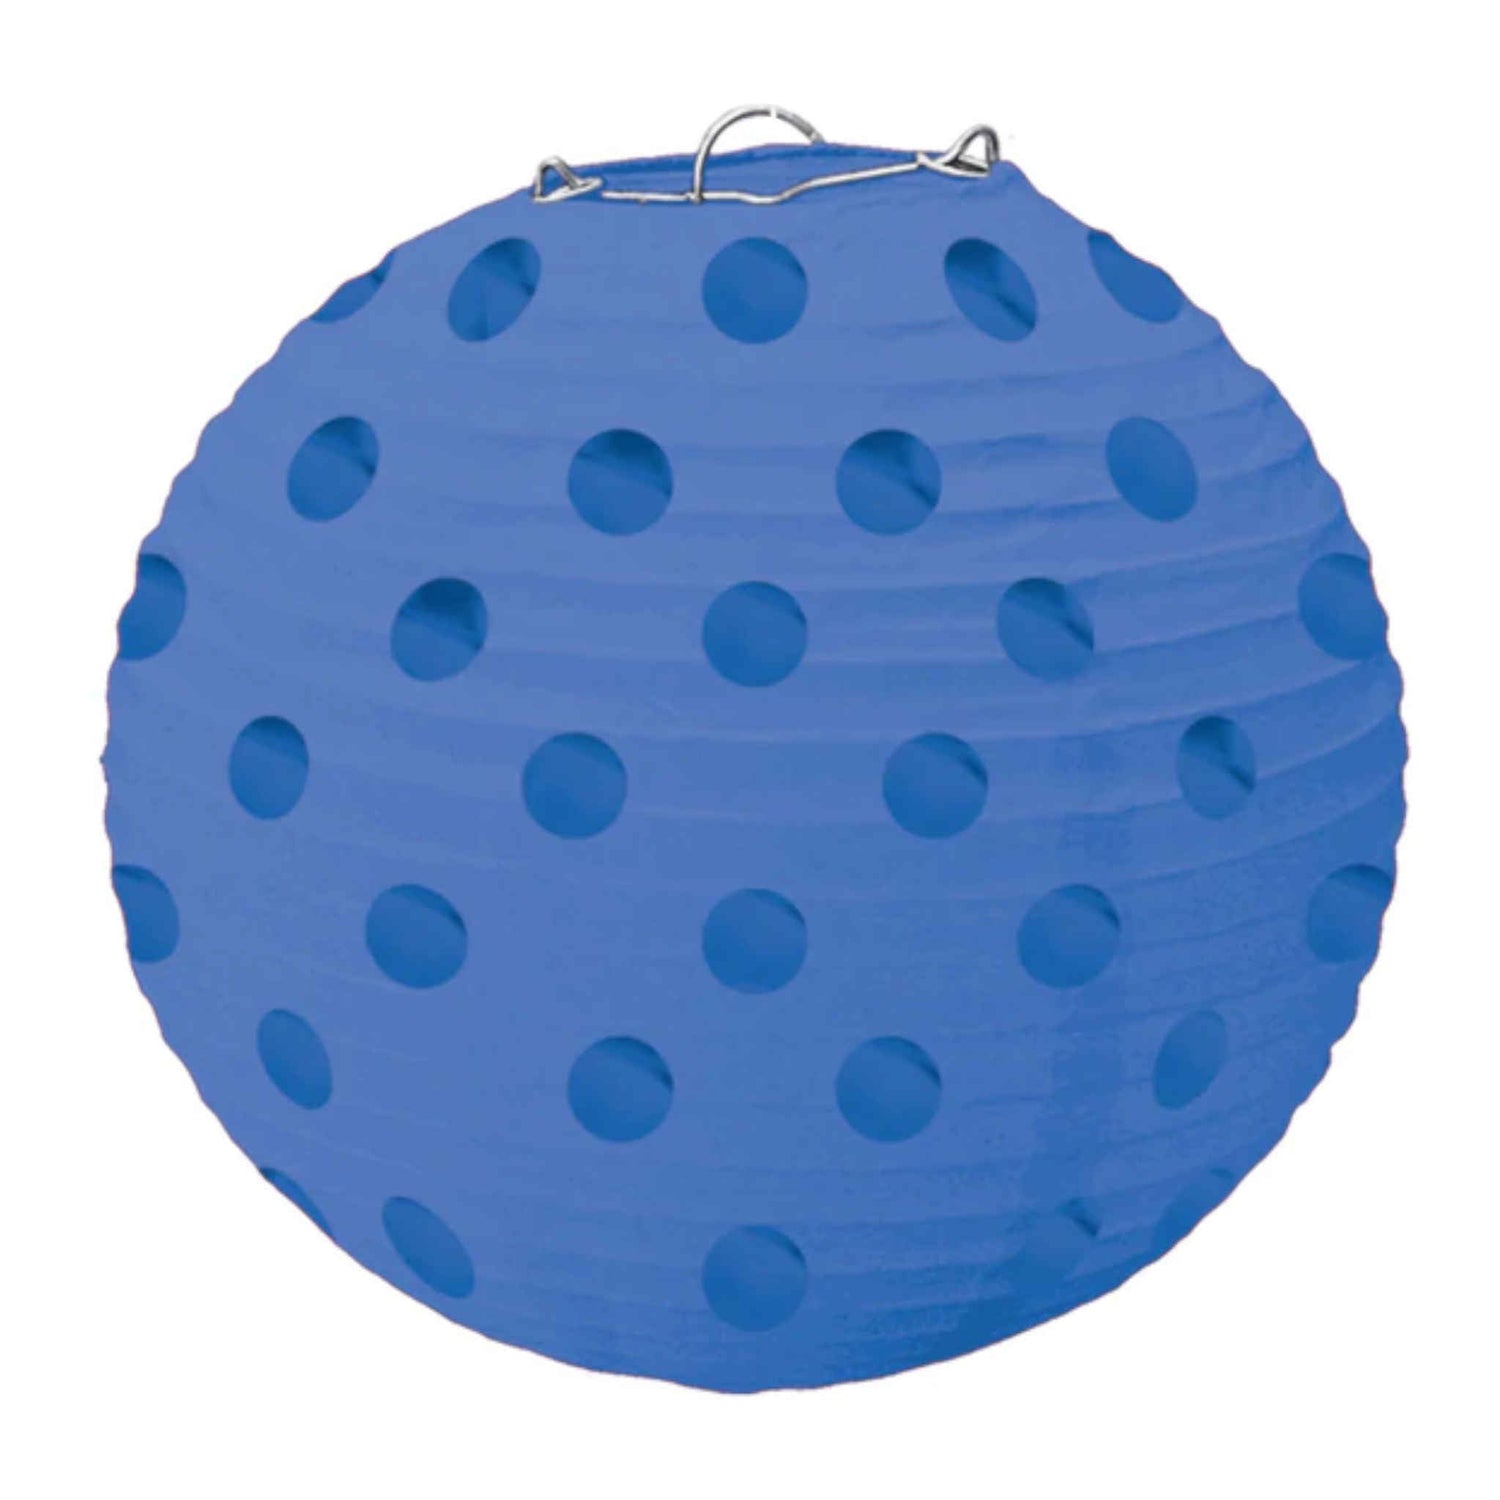 Foil Dot Design Blue Lanterns | 5 Pack | 12.7cm